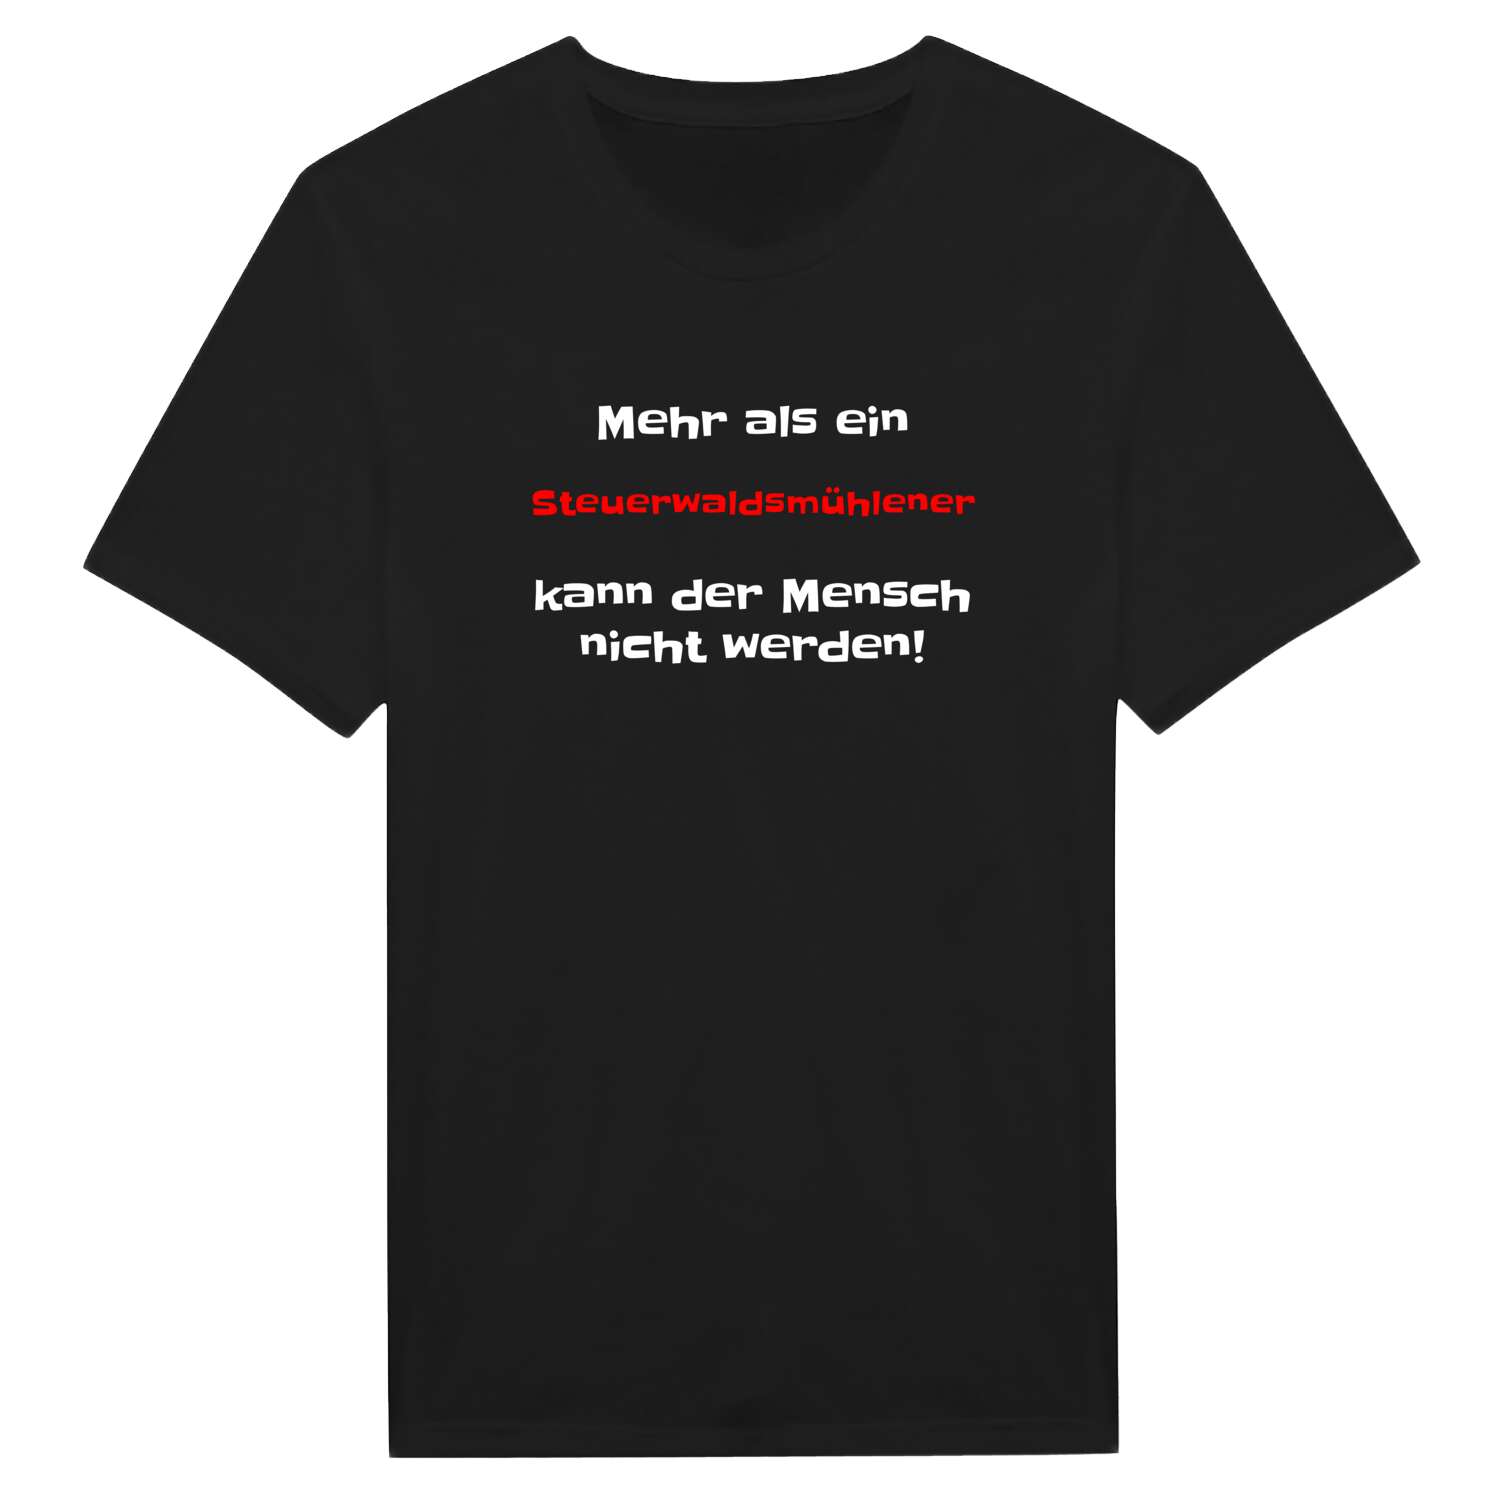 Steuerwaldsmühle T-Shirt »Mehr als ein«